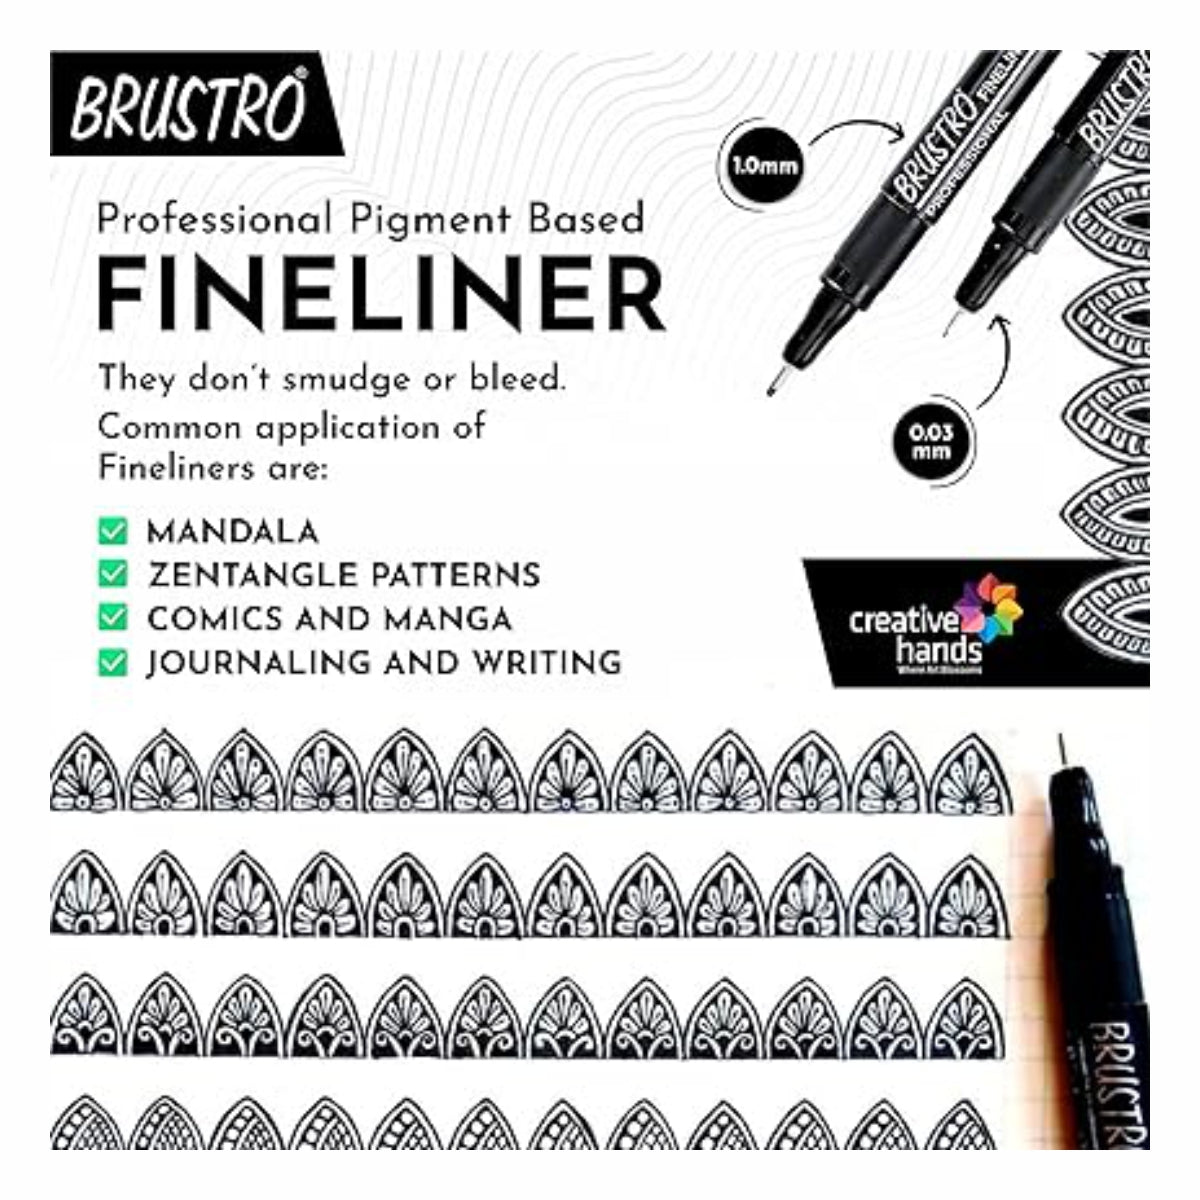 Brustro Fineliner Pens